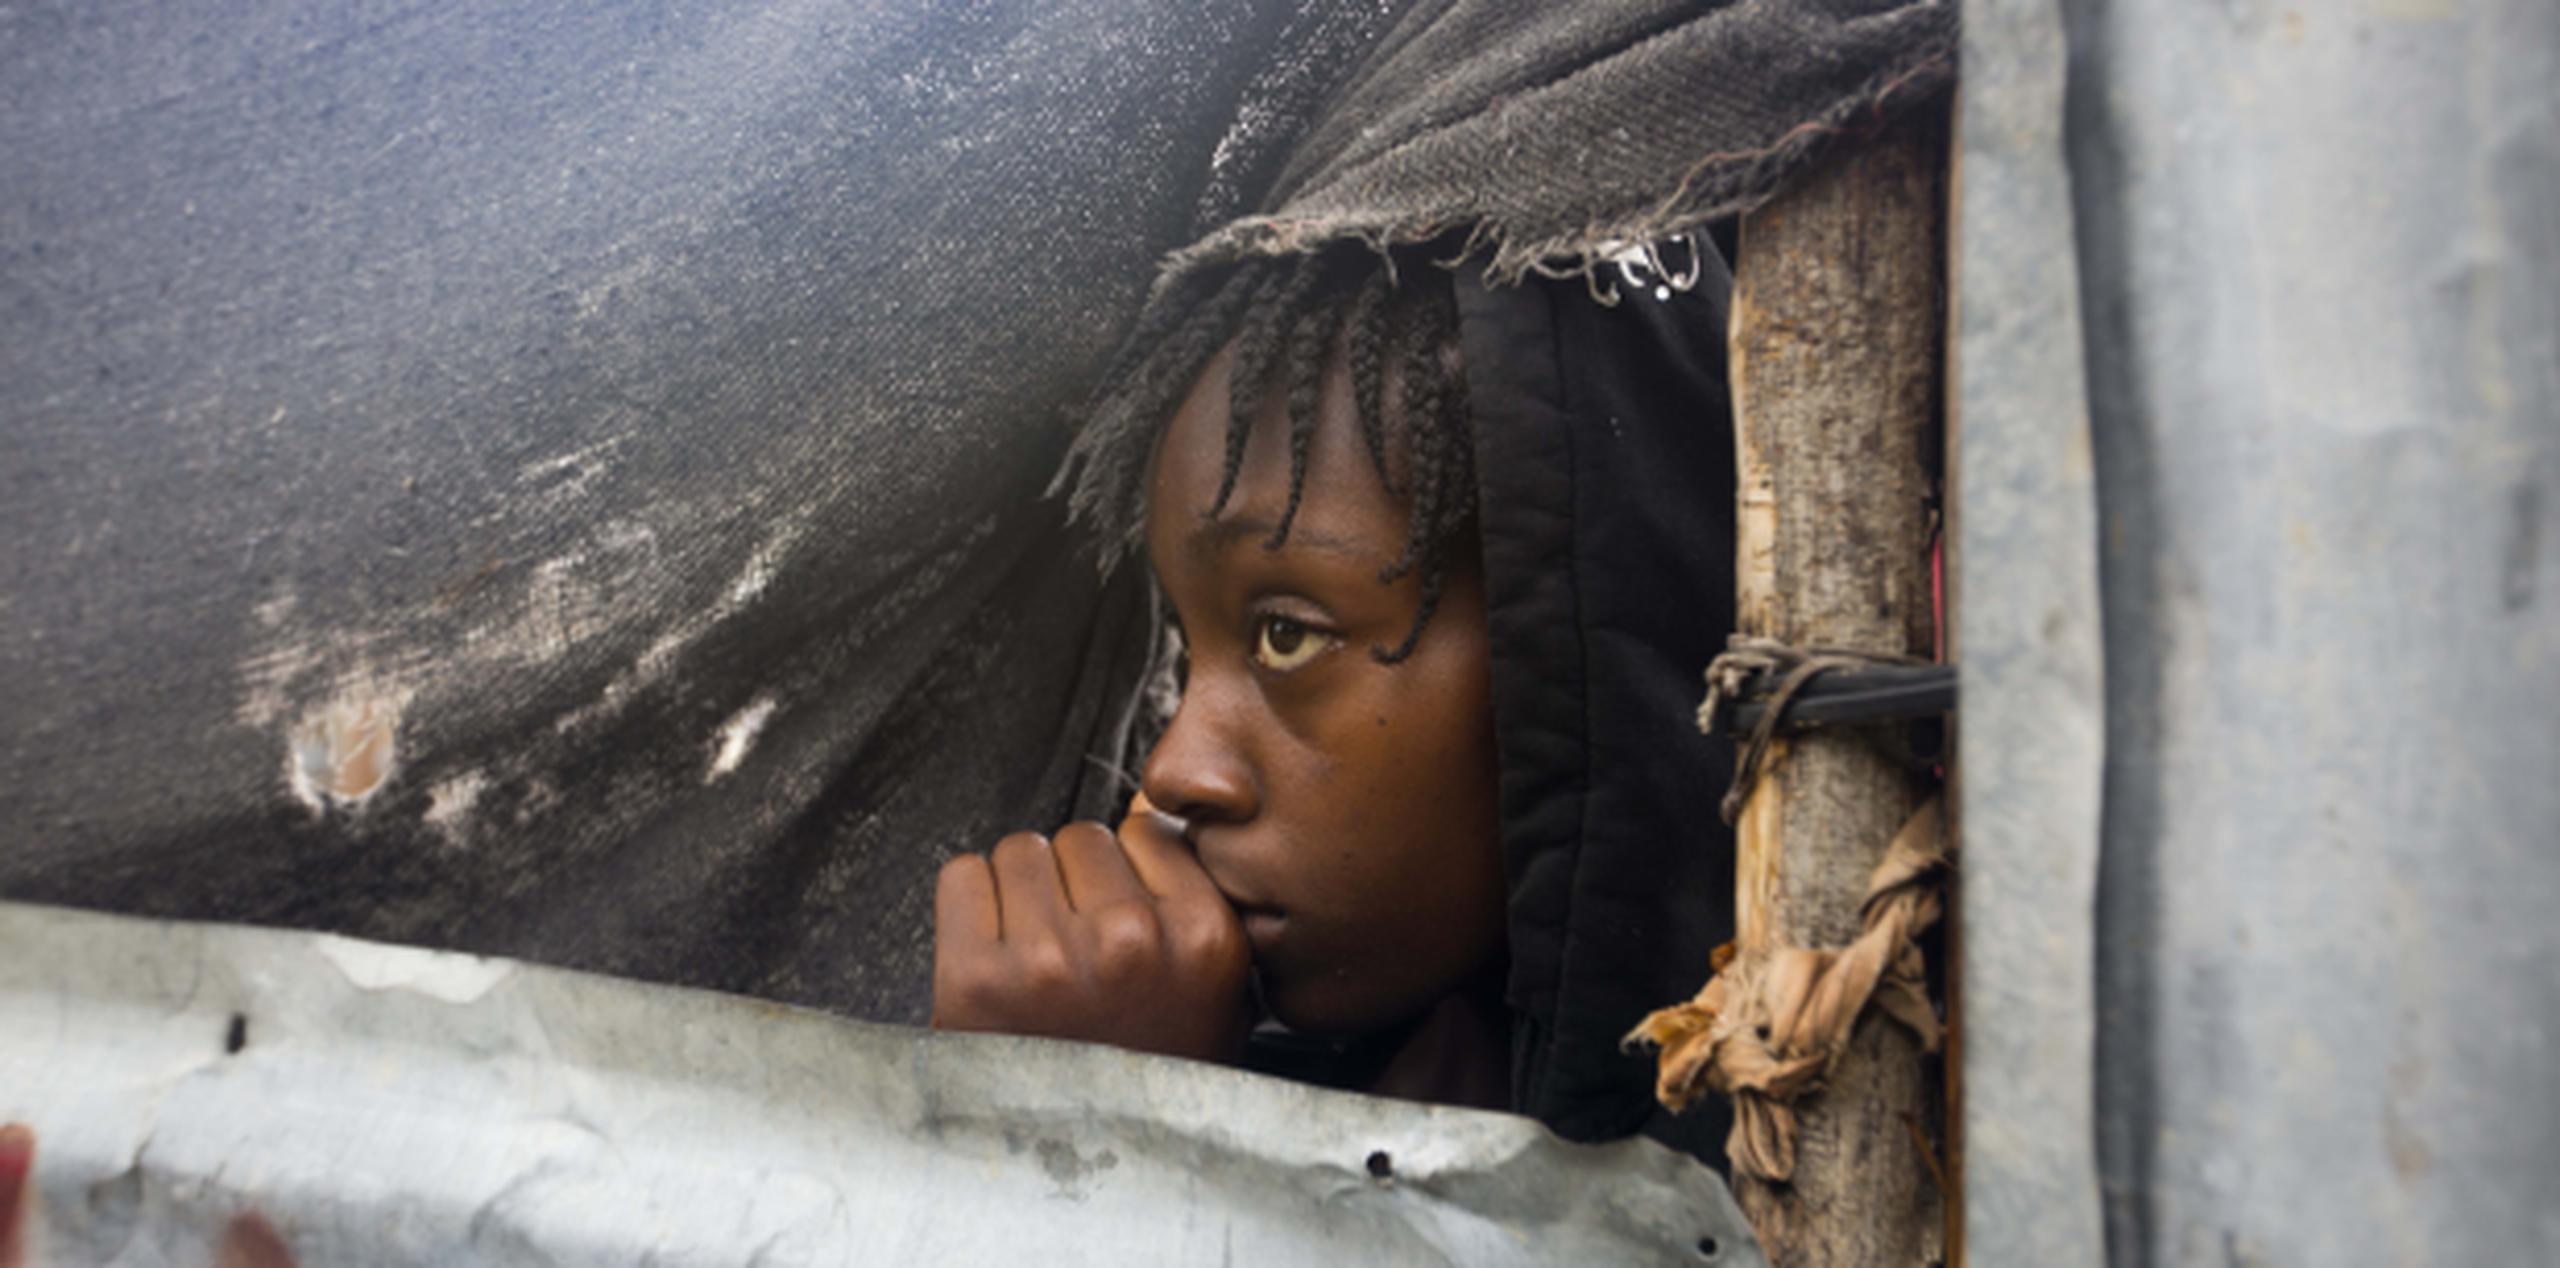 Una niña refugiada en Haití se asoma al exterior para observar las condiciones del clima. (Archivo)